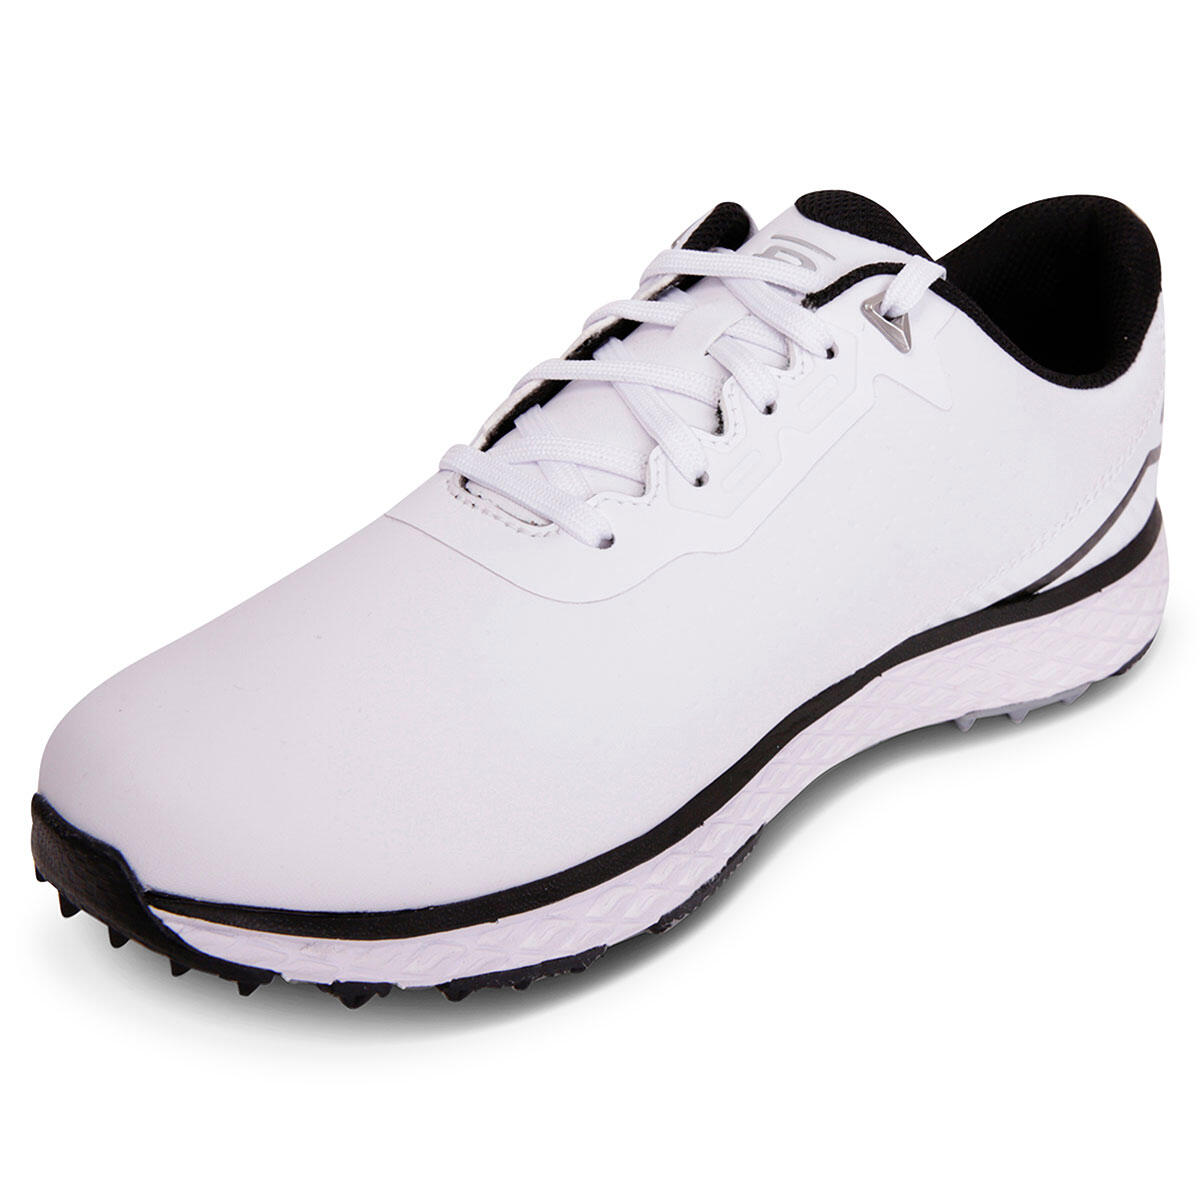 Rife Men's RF-12 Destiny Waterproof Spikeless Golf Shoes 3/4